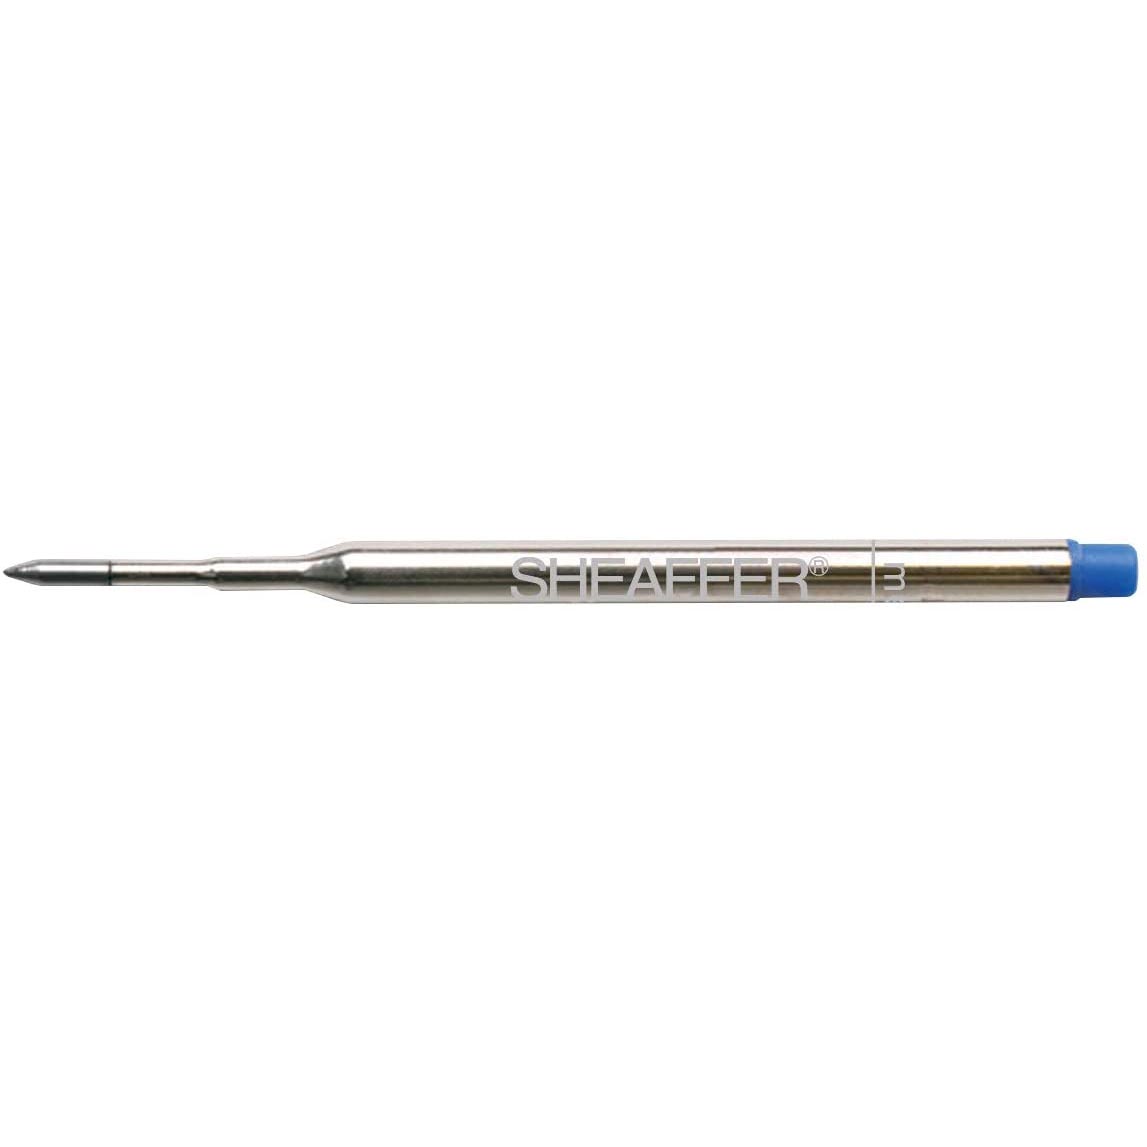 Sheaffer  K ball pen refill  blue medium--bulk packed